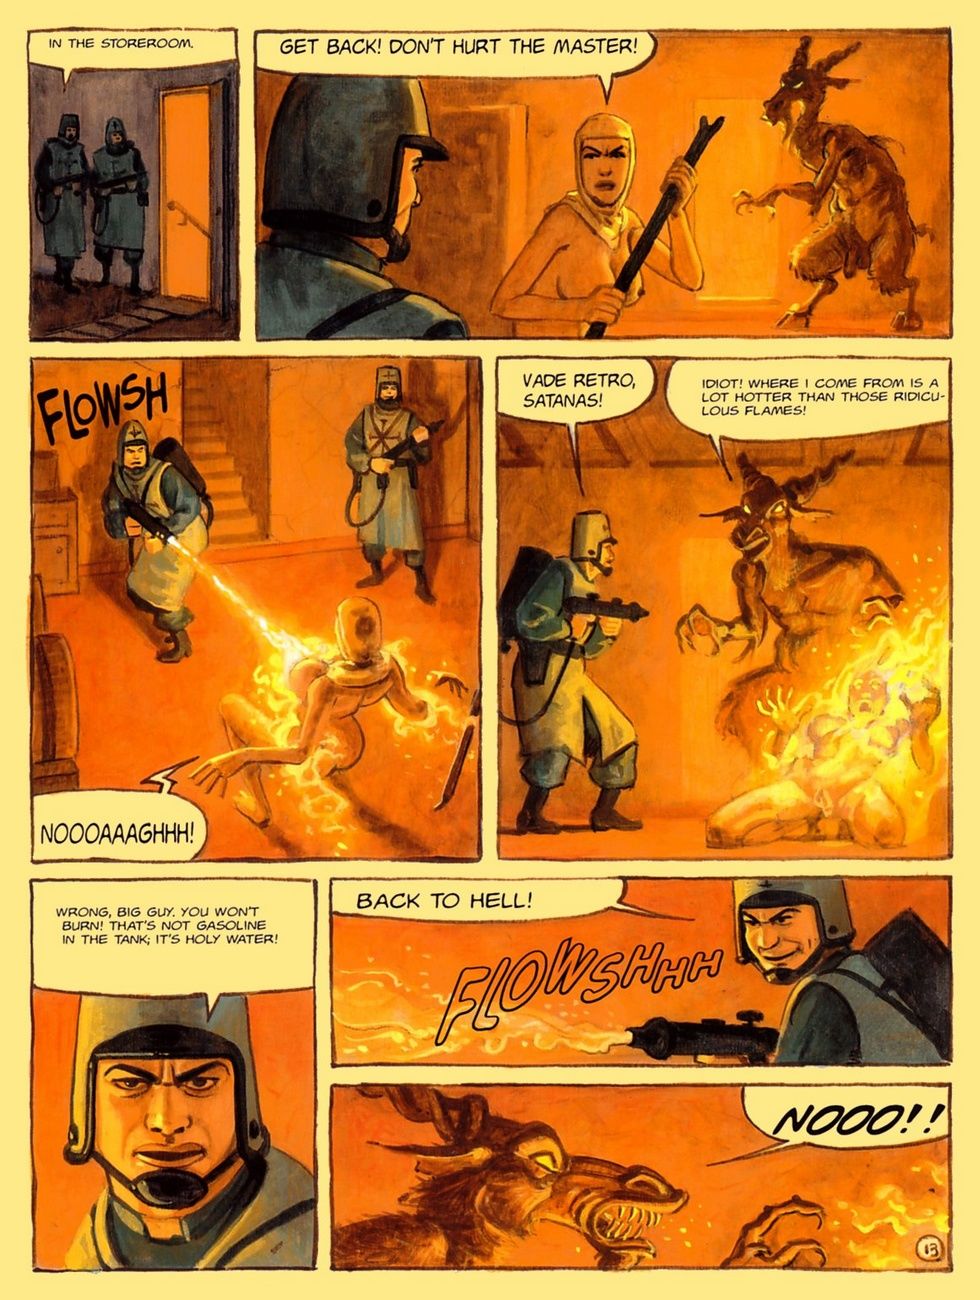 il convento di inferno parte 4 page 1